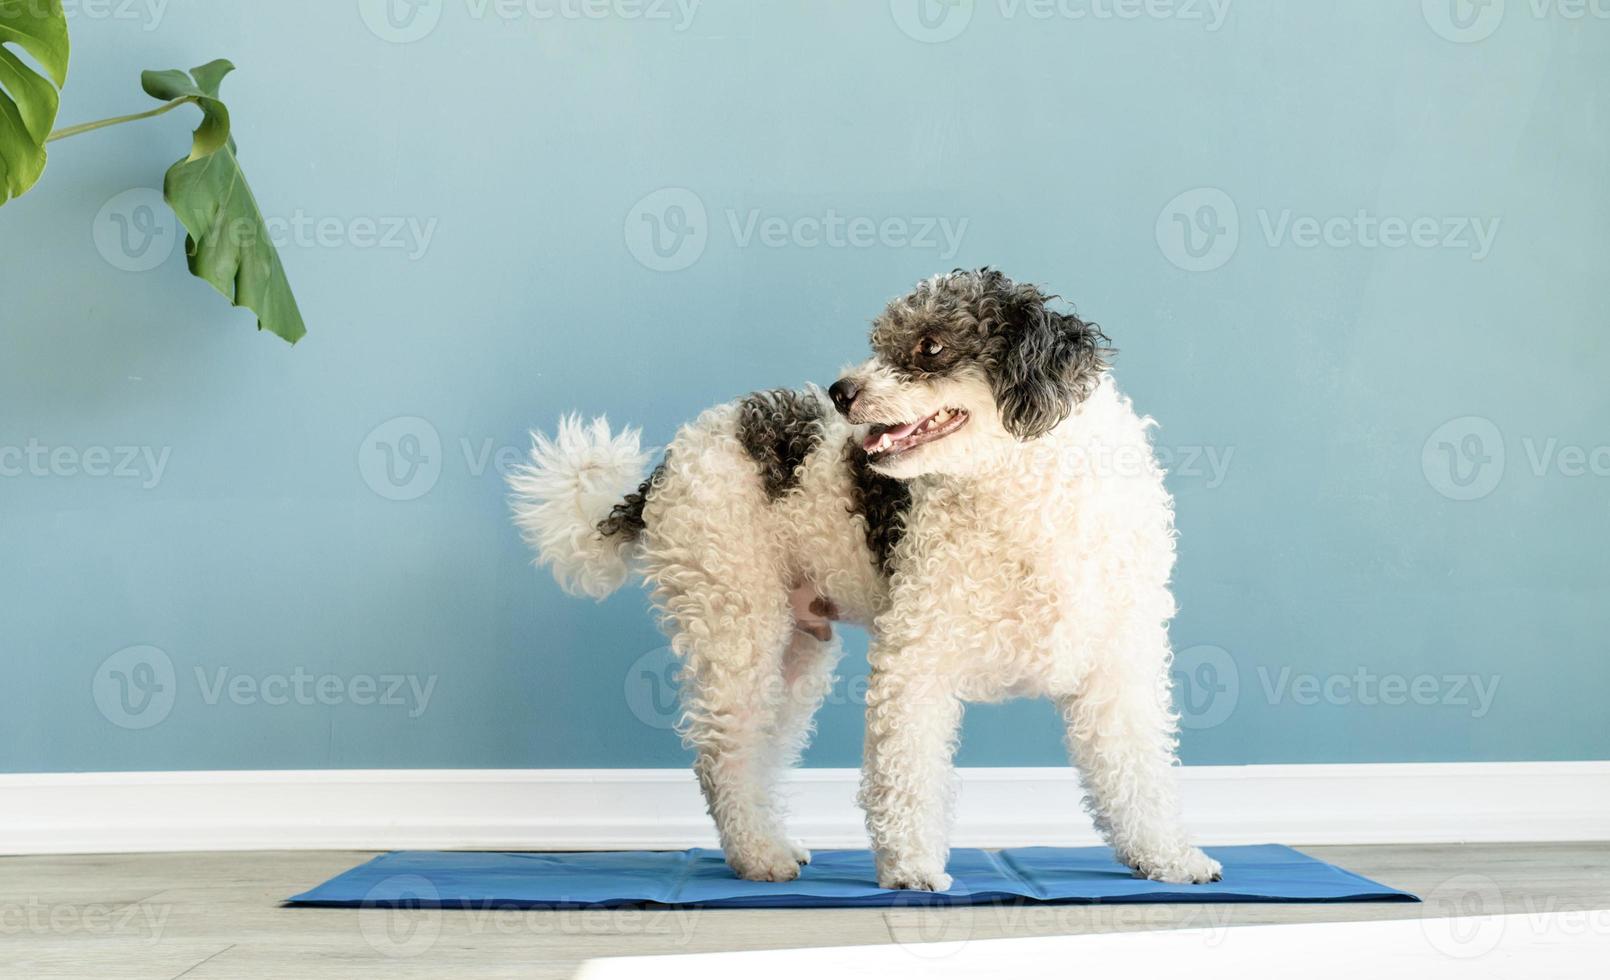 schattig gemengd ras hond zittend op een koele mat opzoeken op blauwe muur achtergrond foto